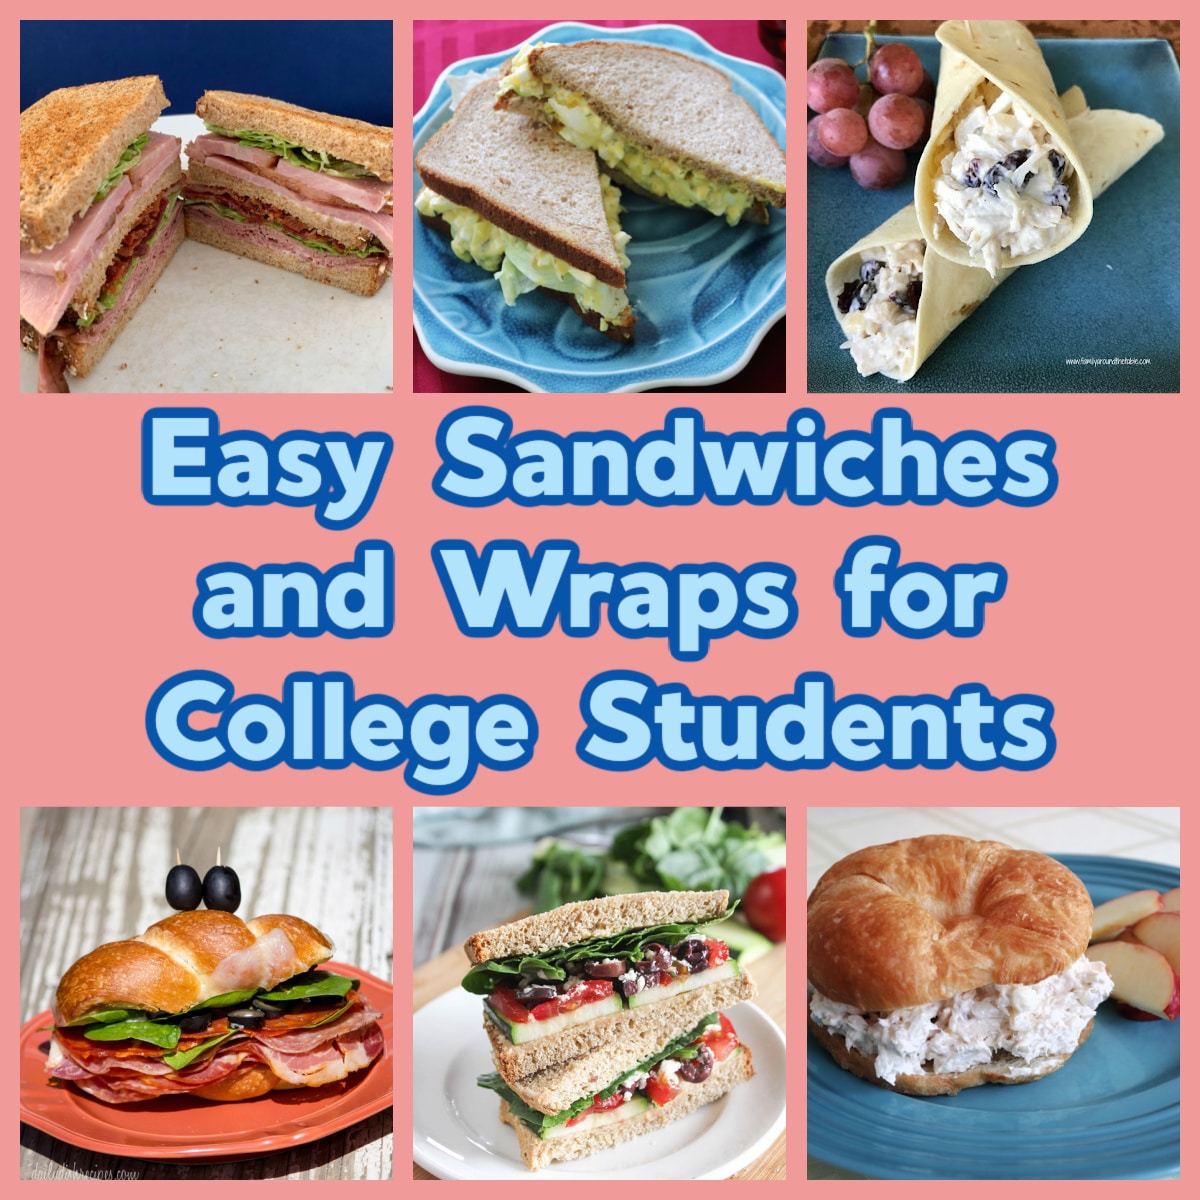 Breakfast Sandwich Maker - College dorm room cooking supplies